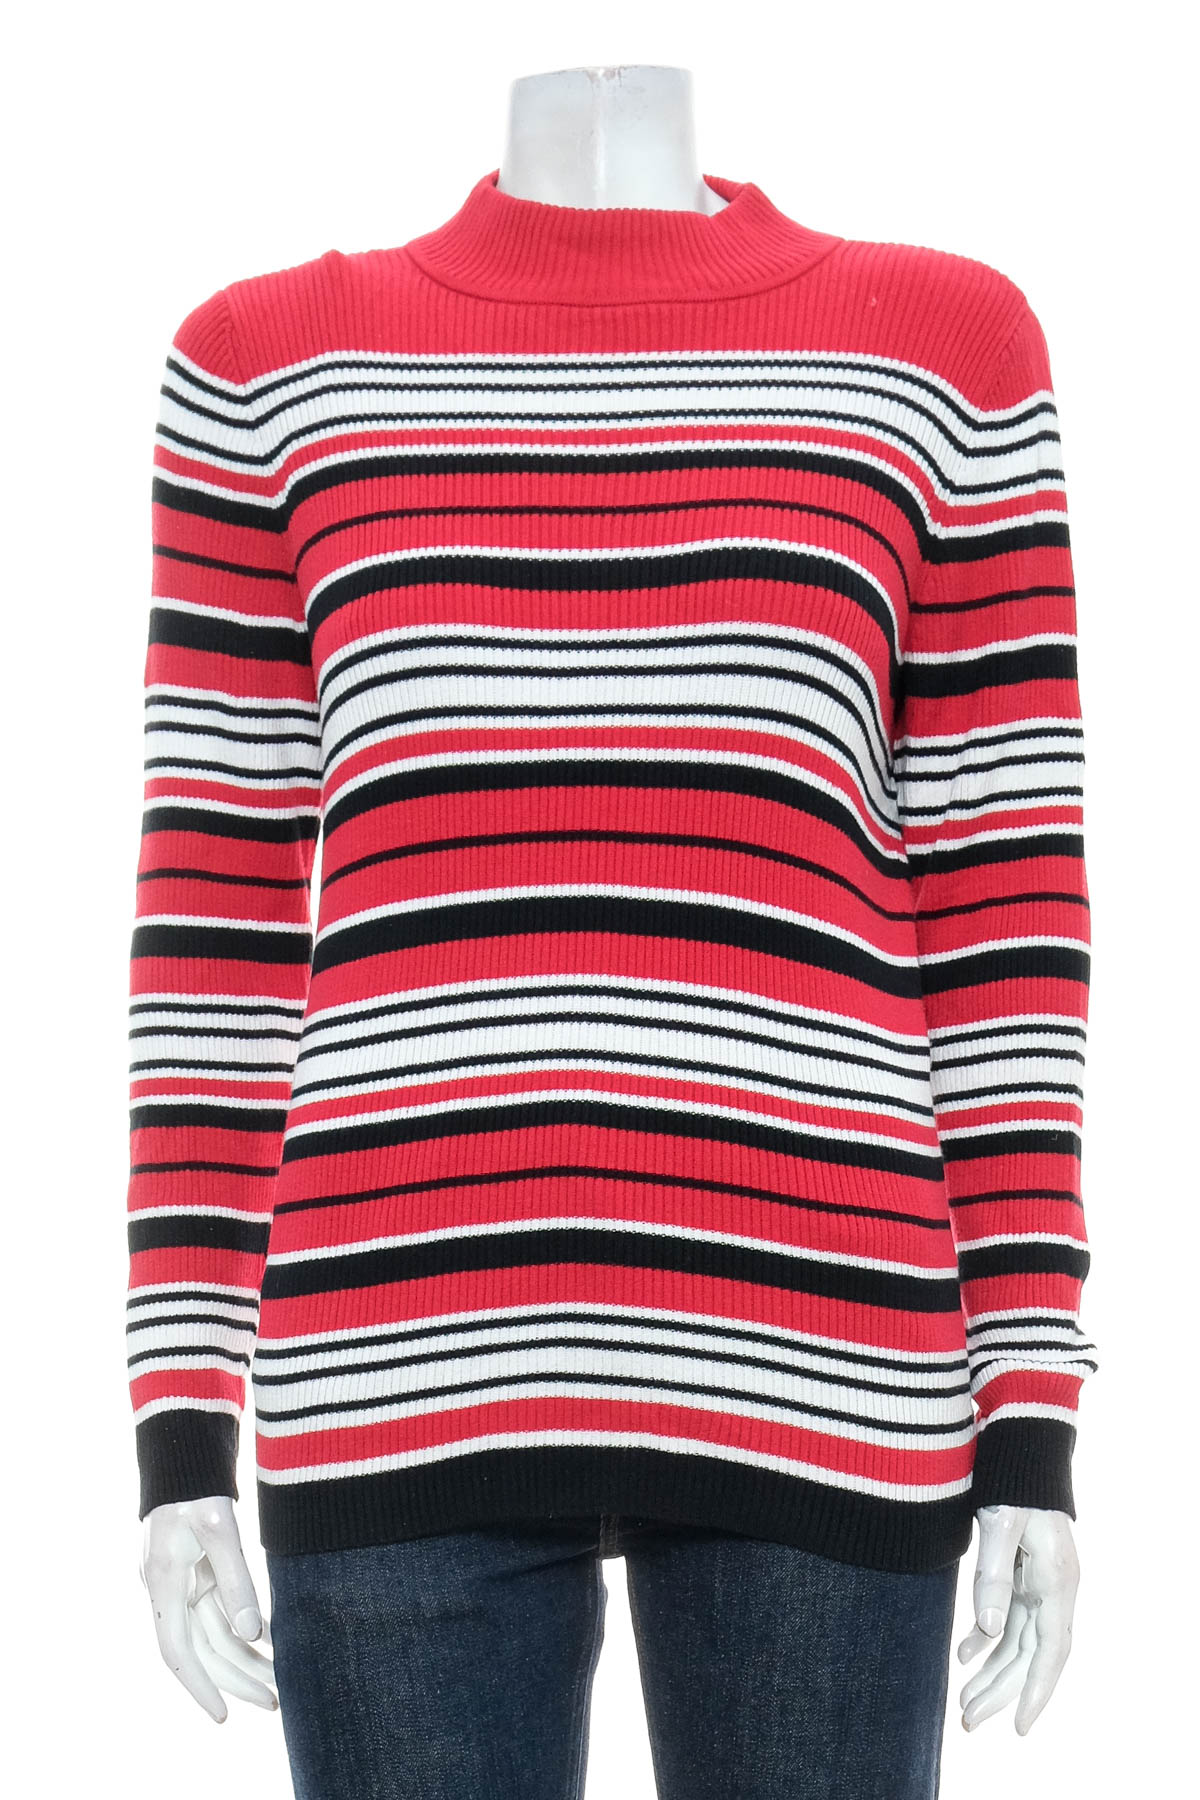 Women's sweater - Karen Scott - 0